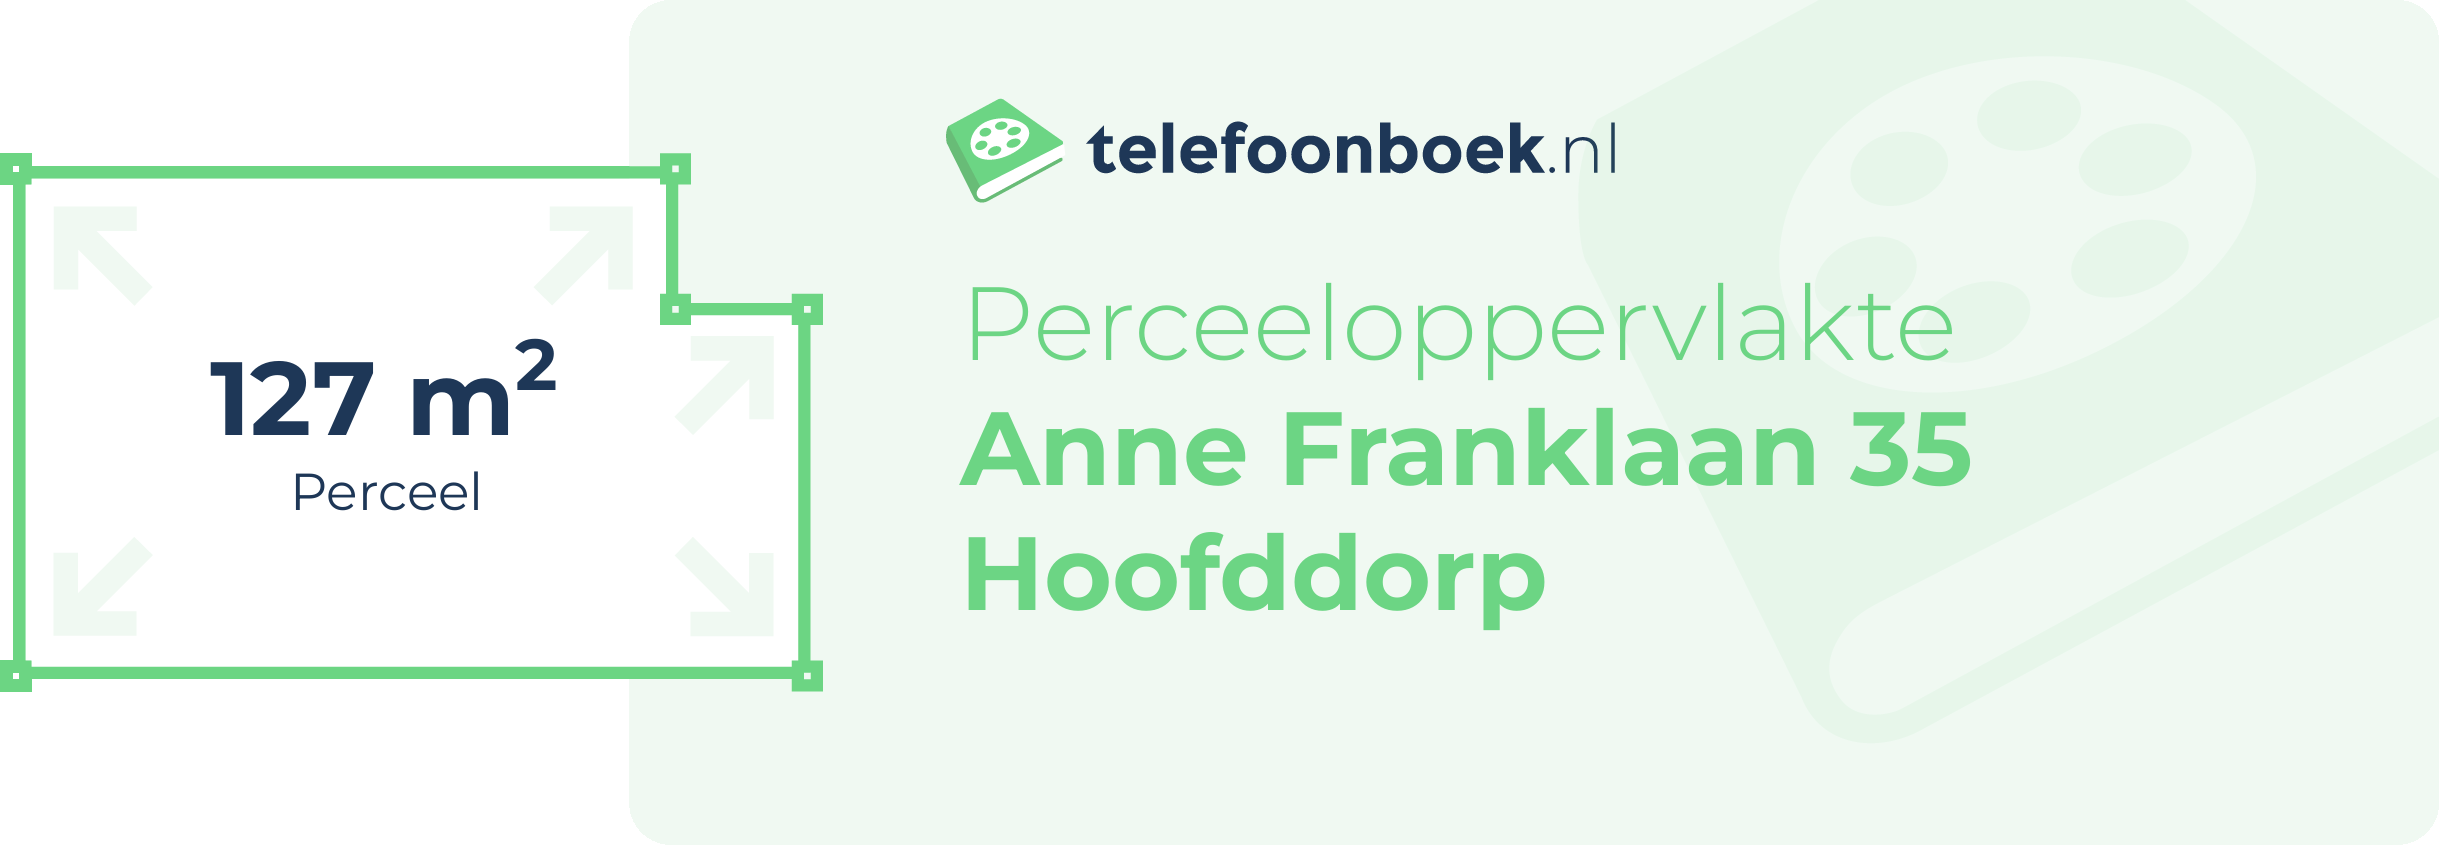 Perceeloppervlakte Anne Franklaan 35 Hoofddorp